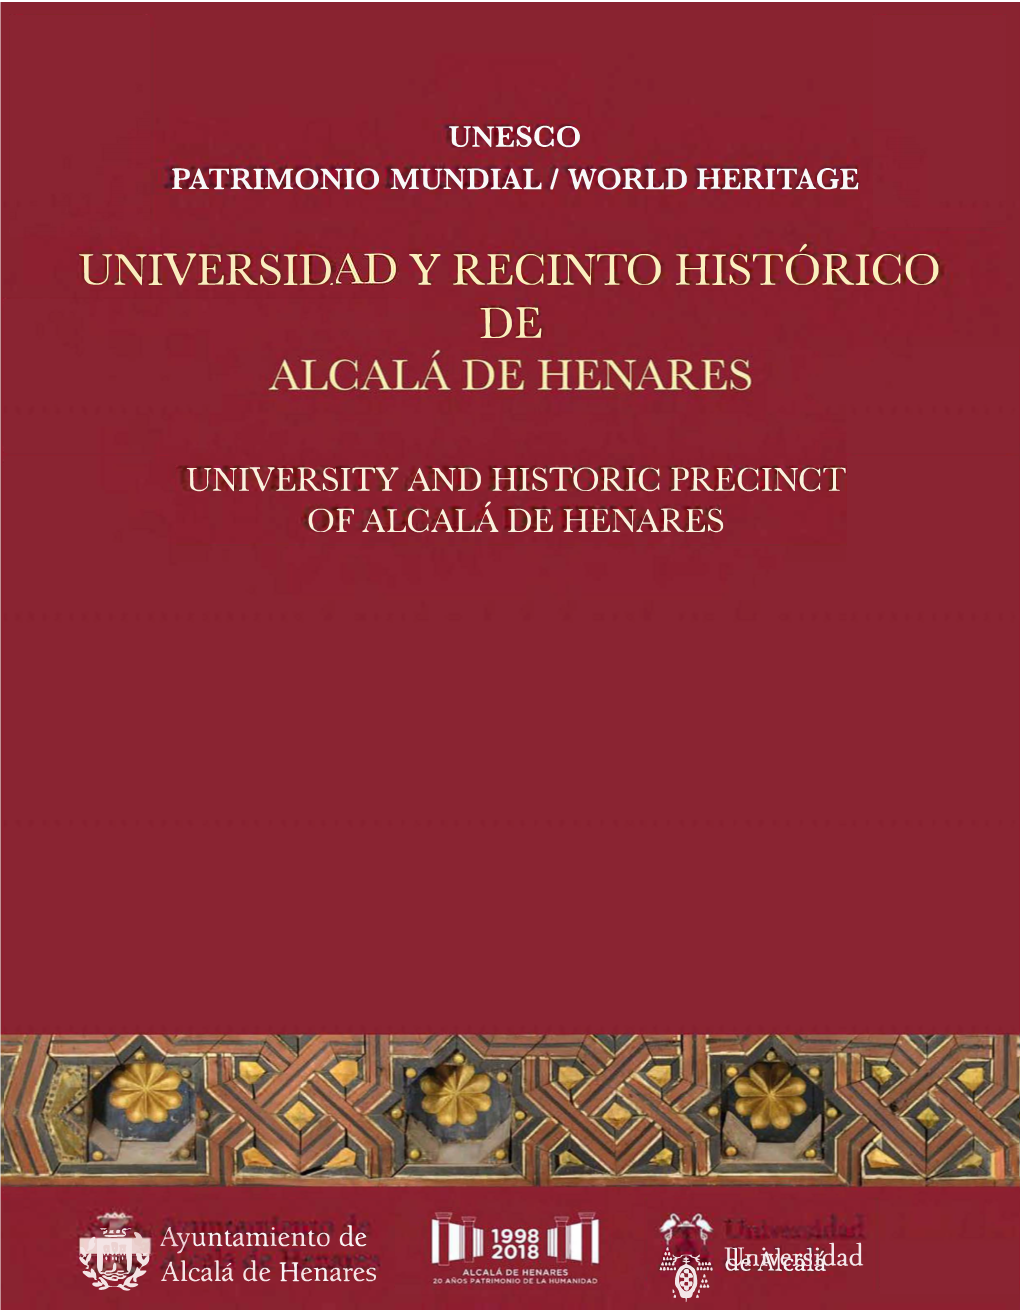 Universidad Y El Recinto Histórico De Alcalá De Henares” Como Patrimonio De La Humanidad